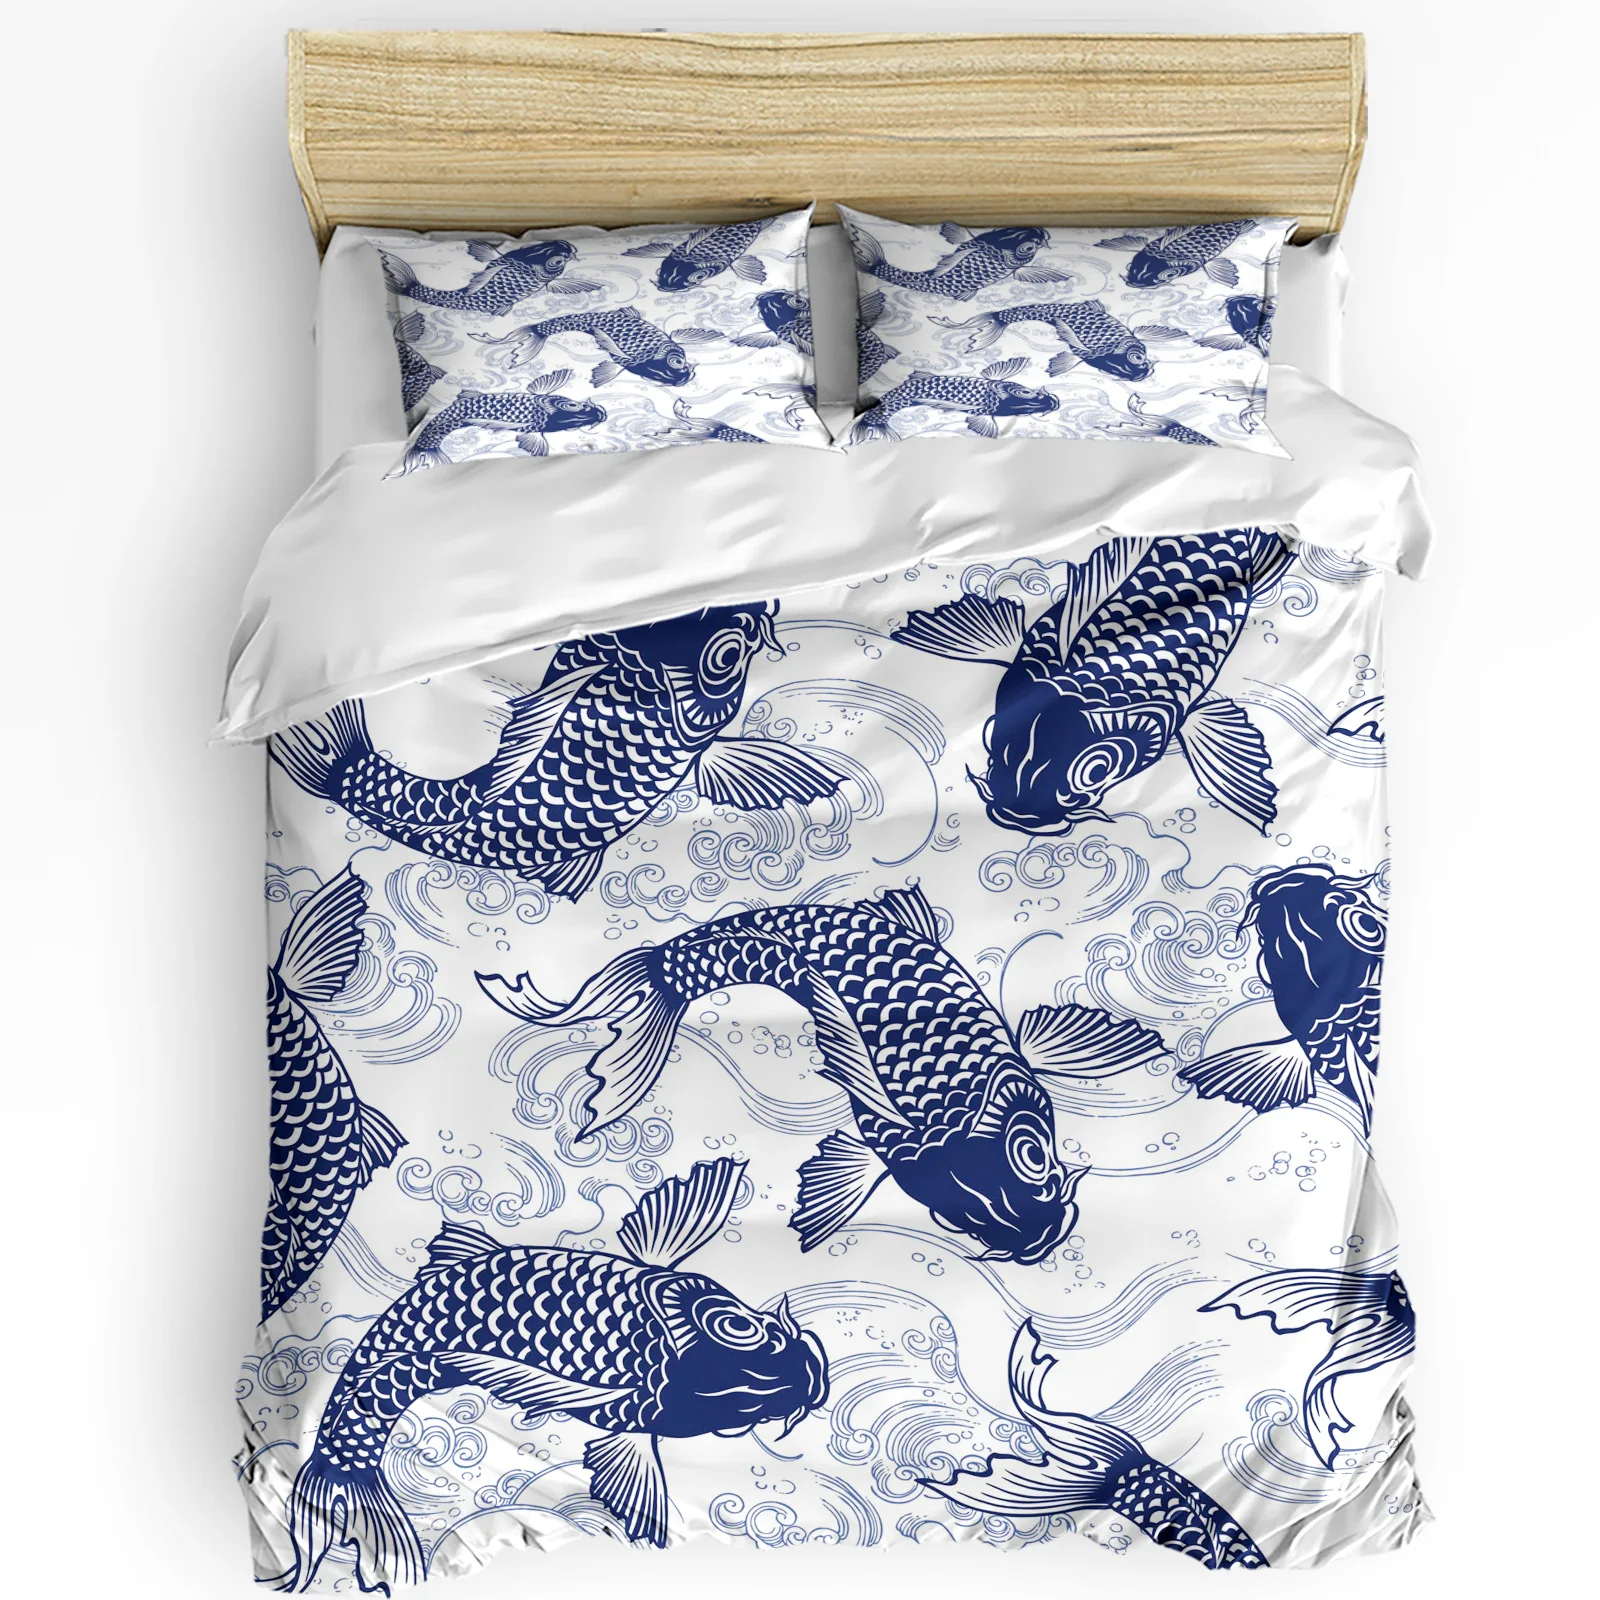 Японский стиль Blue Carp Waves Пододеяльник Комплект постельного белья из 3шт домашнего текстиля, Пододеяльник, Наволочки, Комплект постельного белья для спальни, без простыни 0